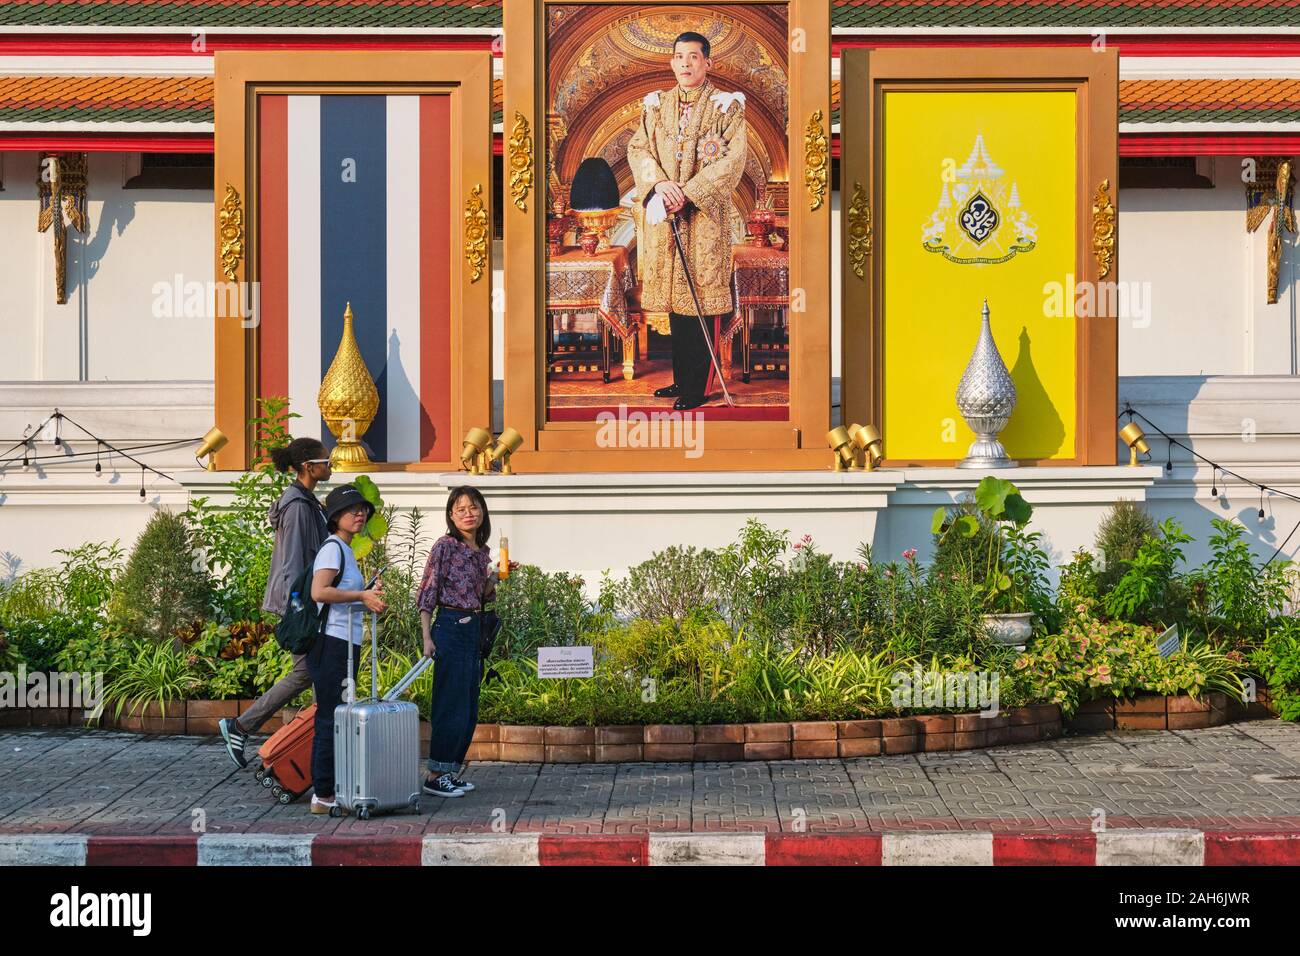 Les touristes avec des valises passent sous un portrait de roi Maha Vajiralongkorn thaïlandais le long du mur oriental de Wat Po (PHO), Bangkok, Thaïlande Banque D'Images